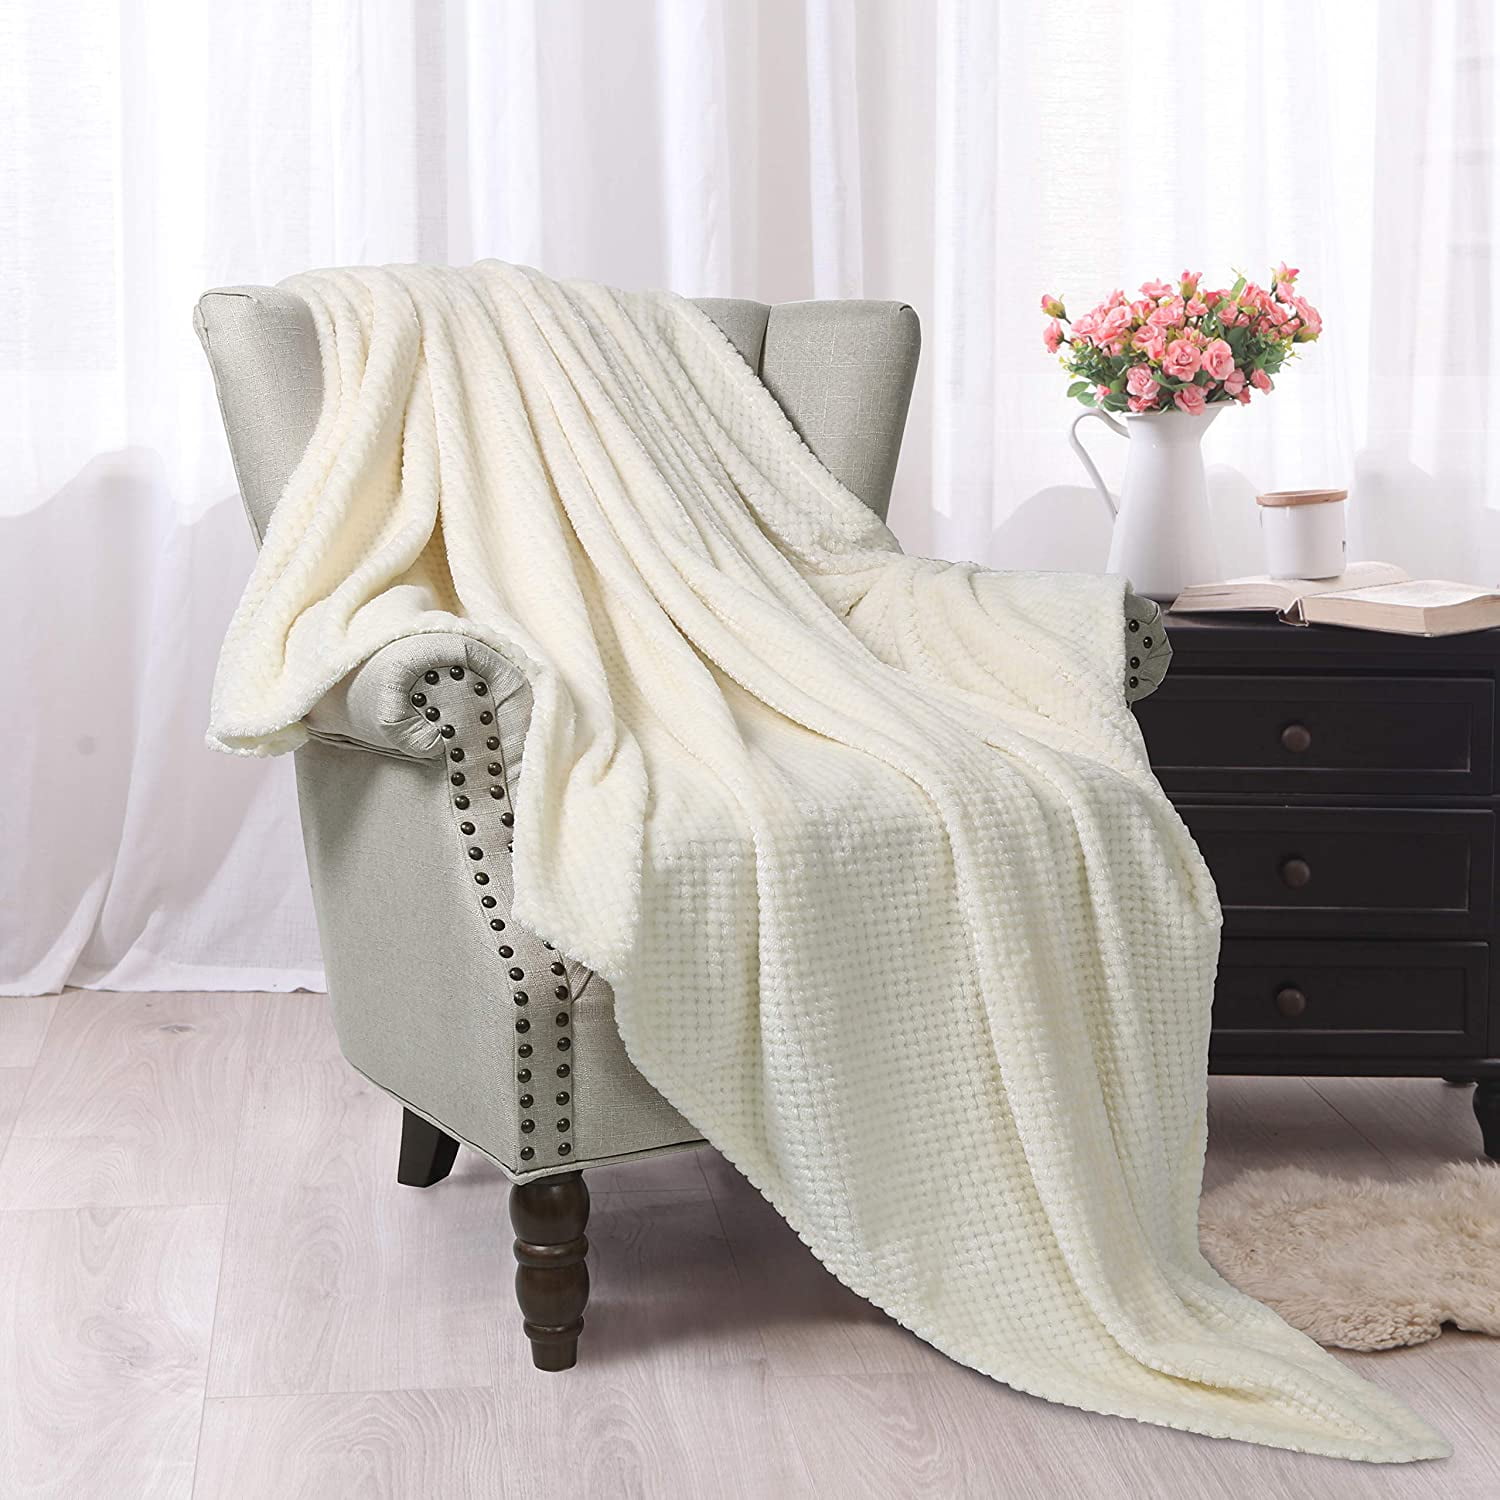 ご注意ください Exclusivo Mezcla Waffle Textured Soft Fleece Blanket,King Size Bed  Blanket 毛布、ブランケット